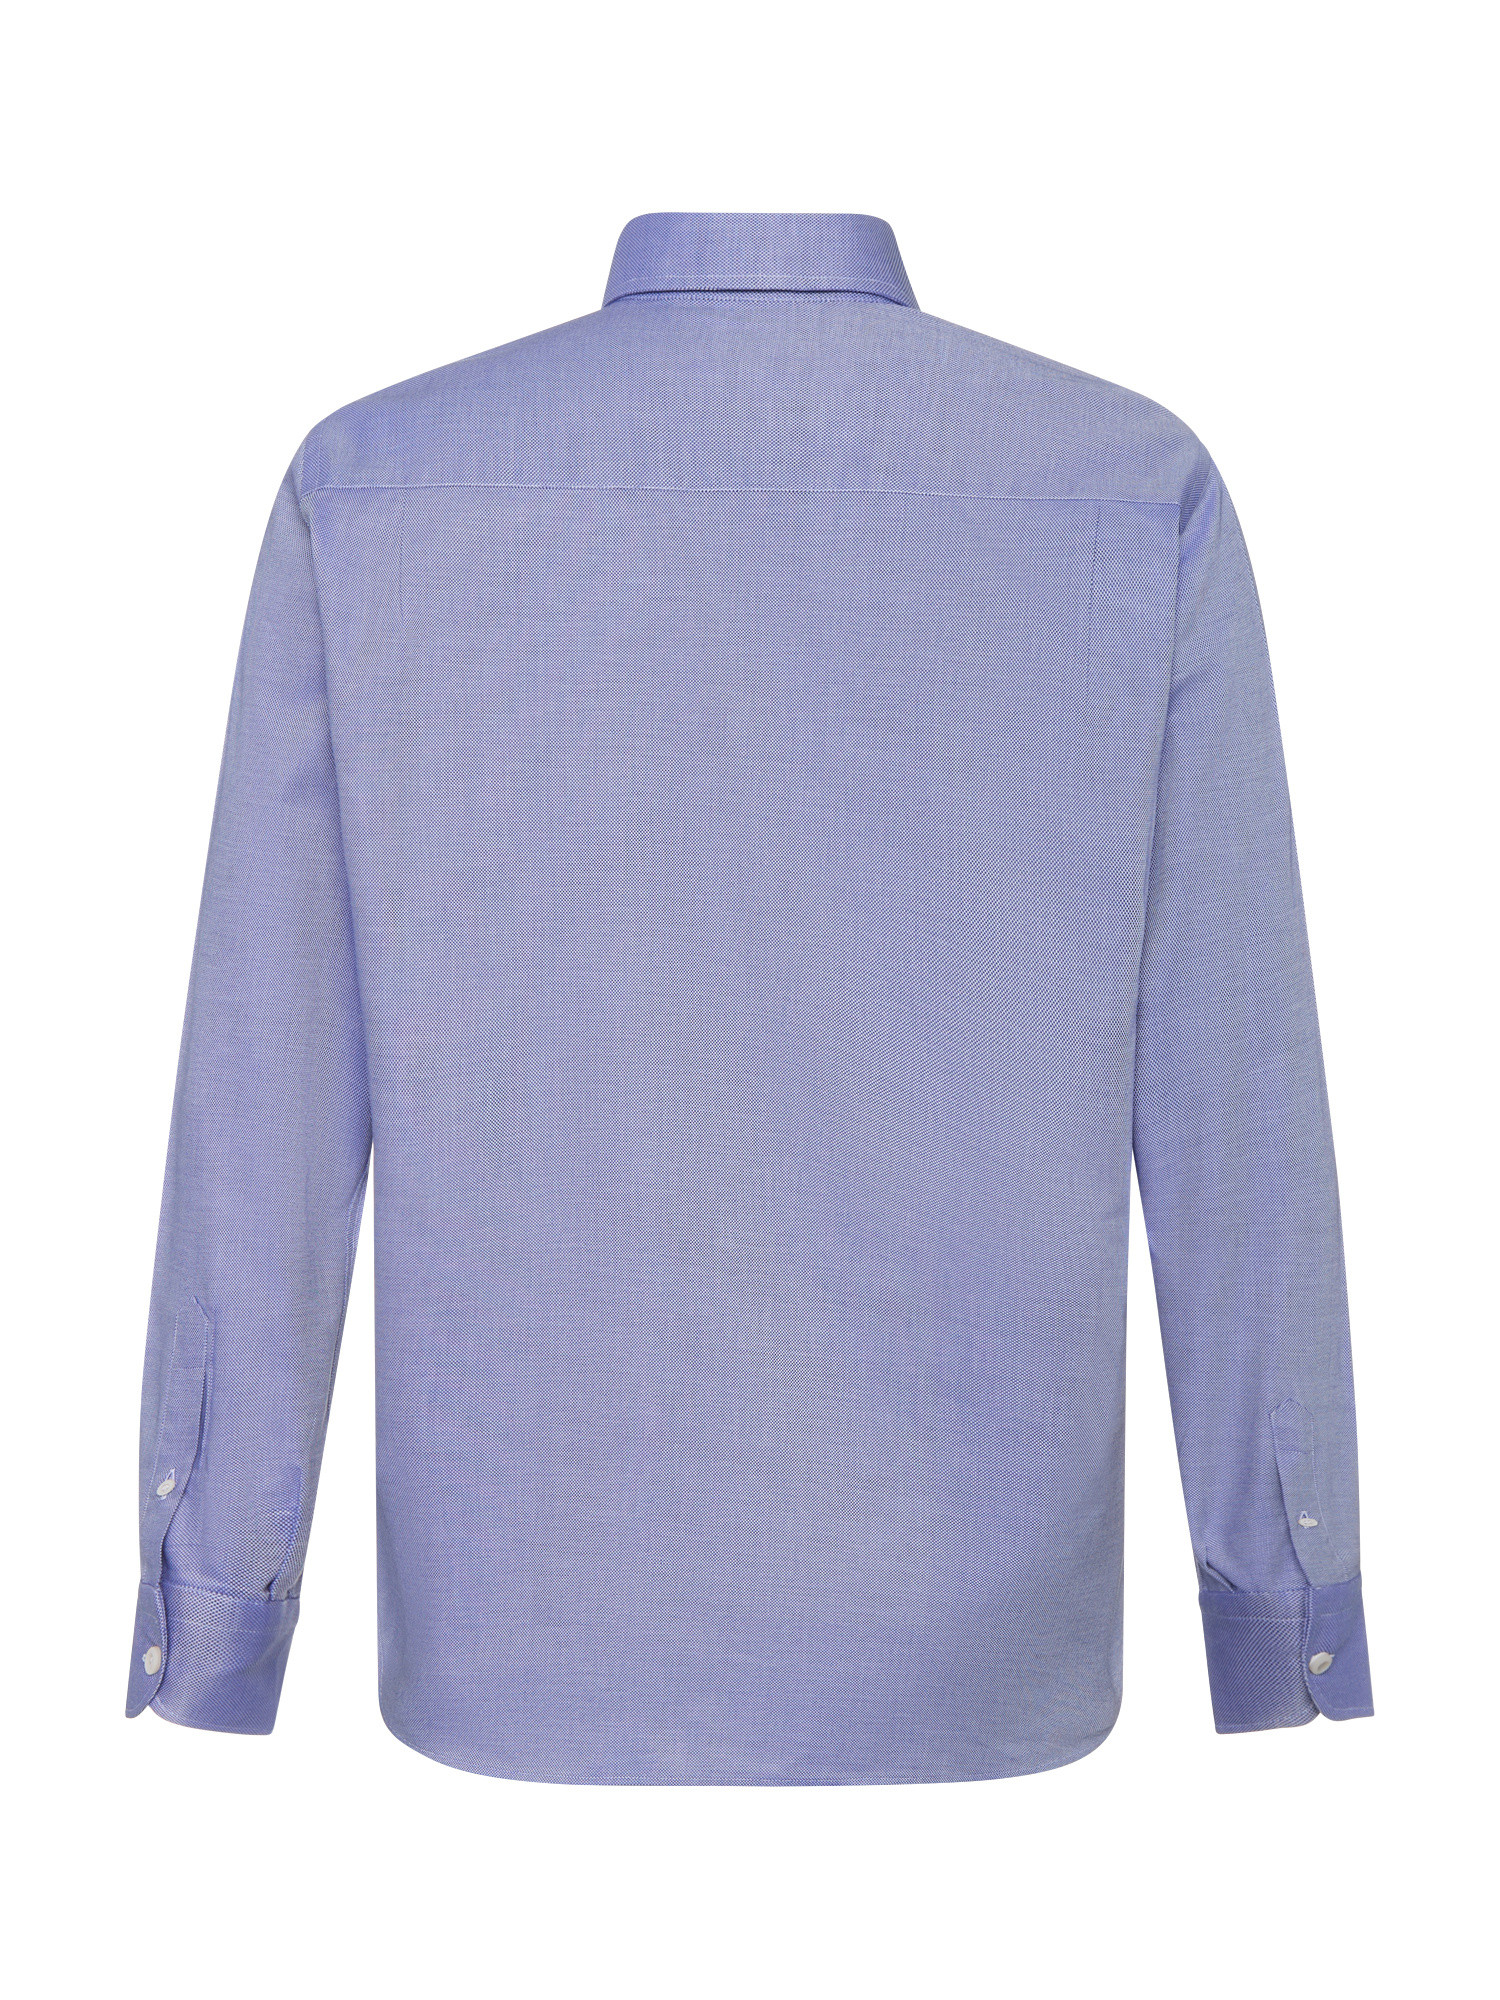 Luca D'Altieri - Camicia casula regular fit in puro cotone armaturato, Azzurro, large image number 2